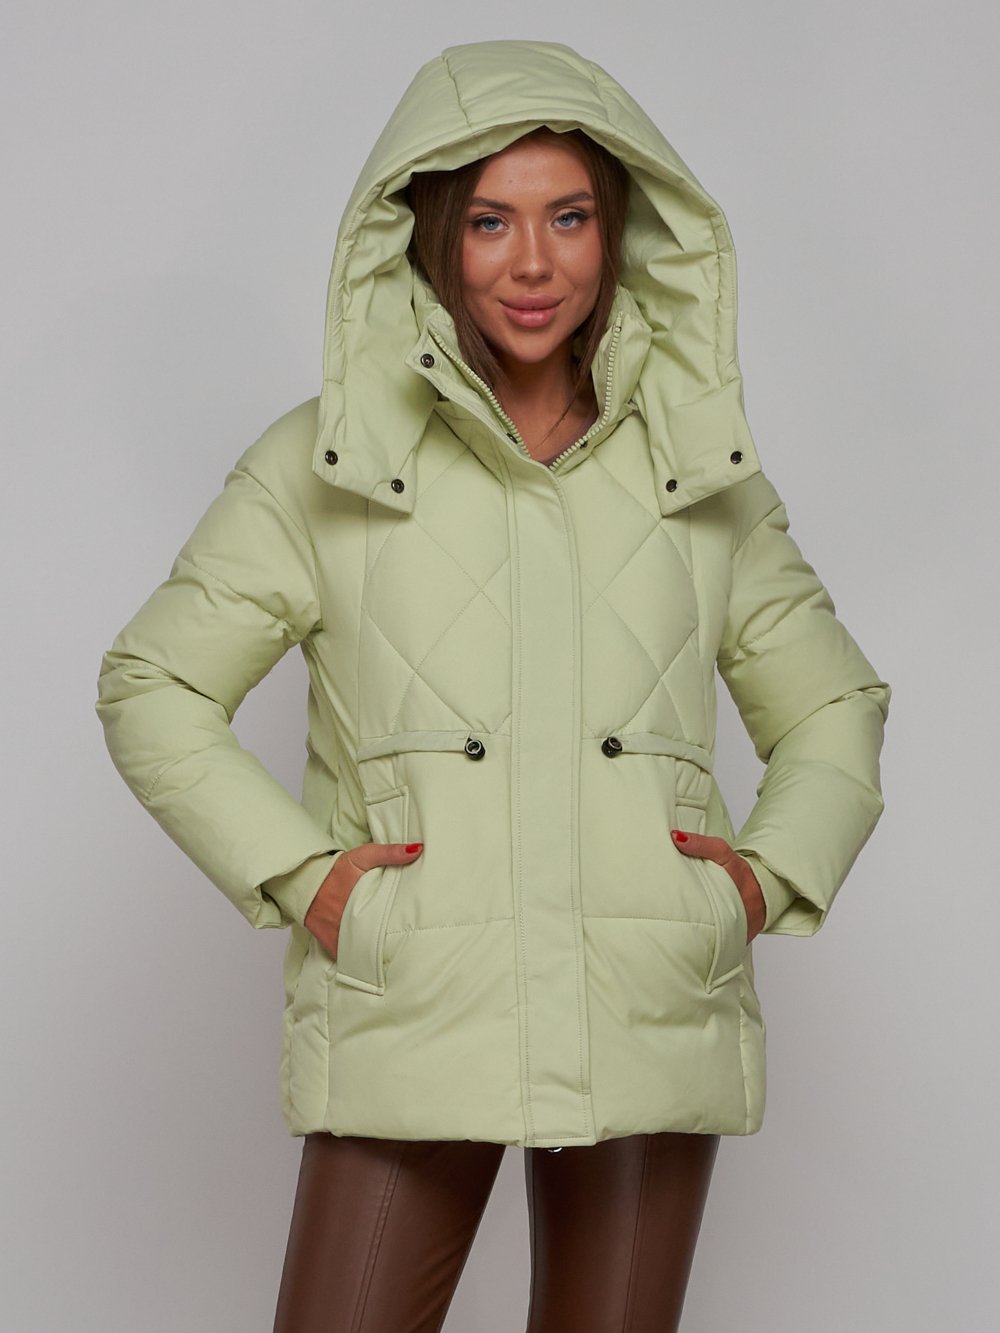 Купить куртку зимнюю оптом от производителя недорого в Москве 52302Sl 1